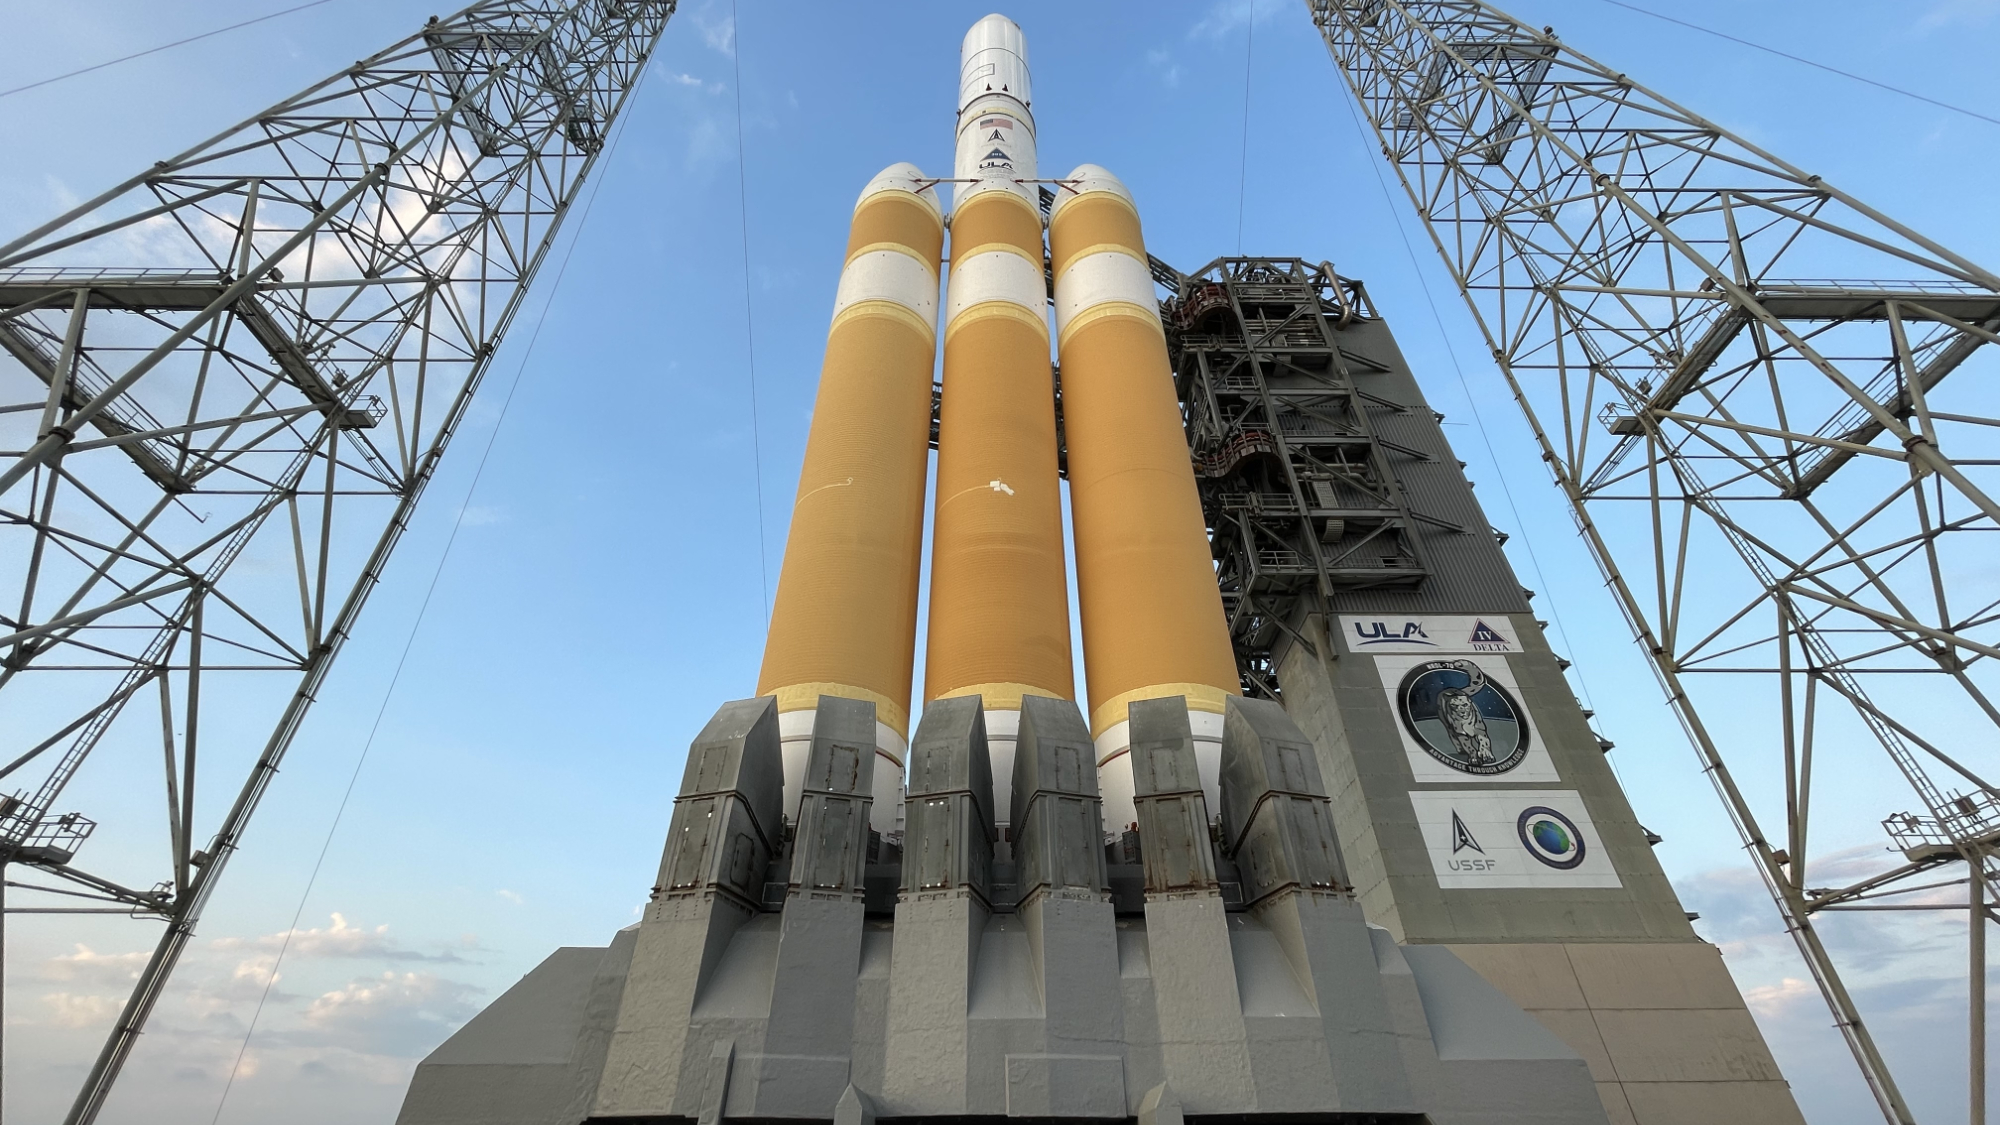 Η τελική εκτόξευση του πυραύλου Delta IV Heavy έγινε αργά στην αντίστροφη μέτρηση